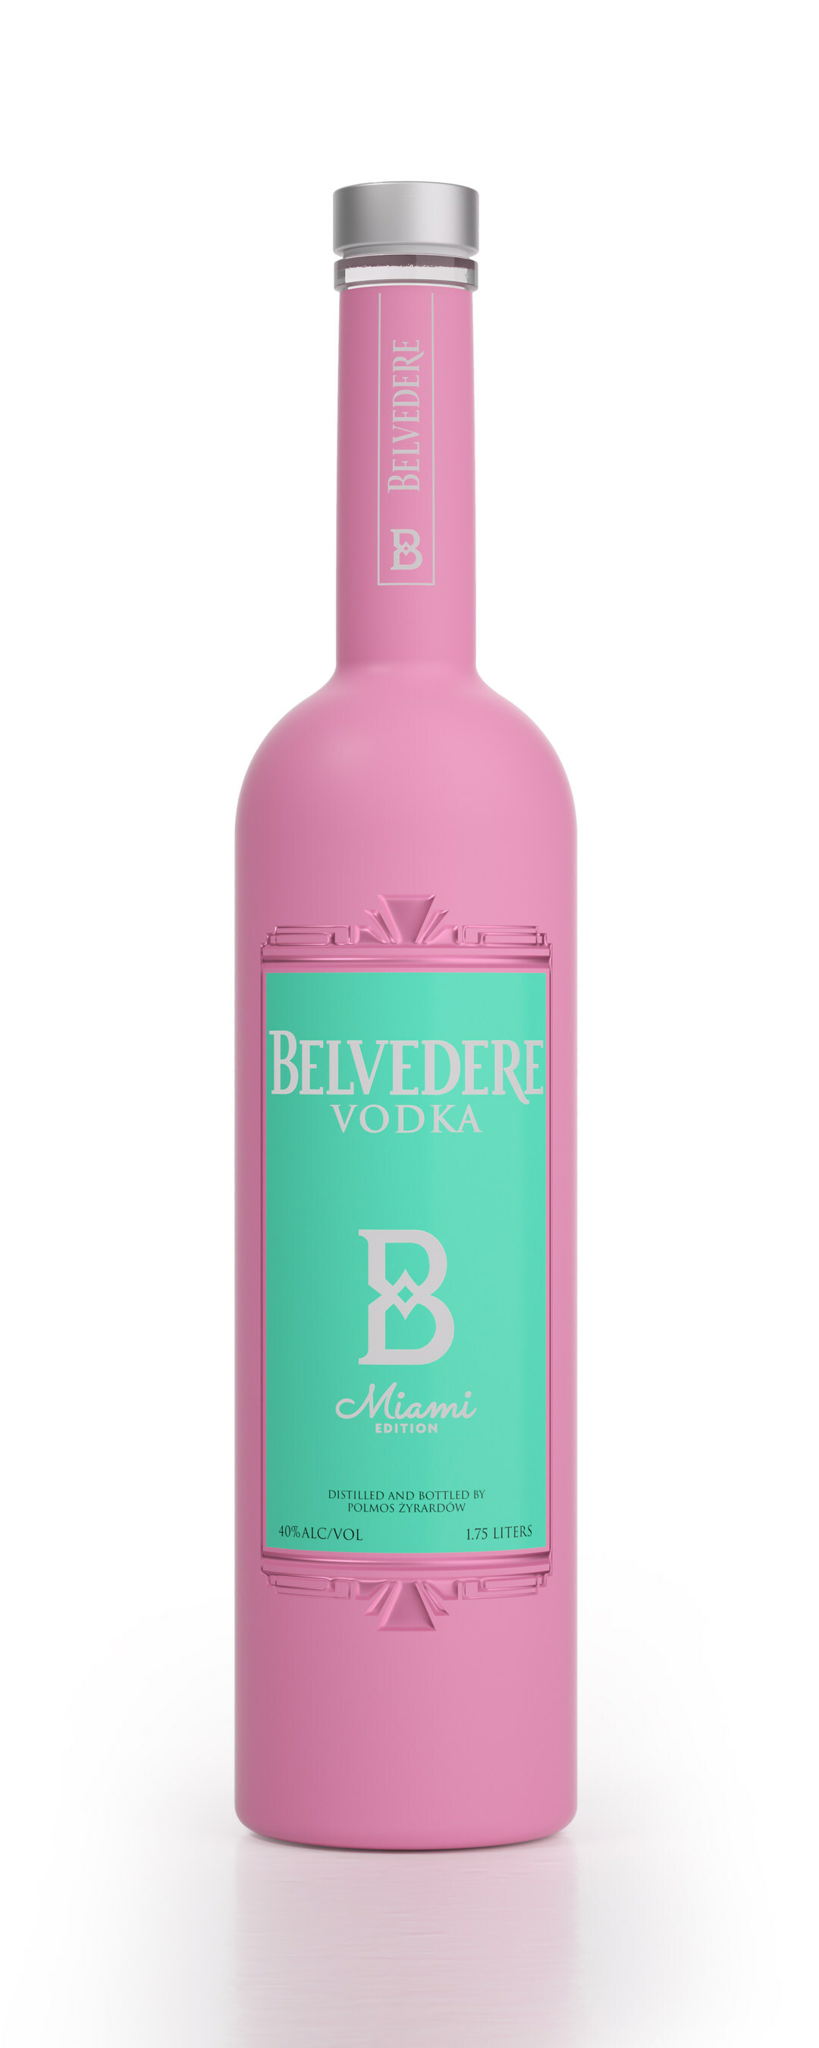 Belvedere_Vodka_new_limited_edition_Miami_Bottle.jpg